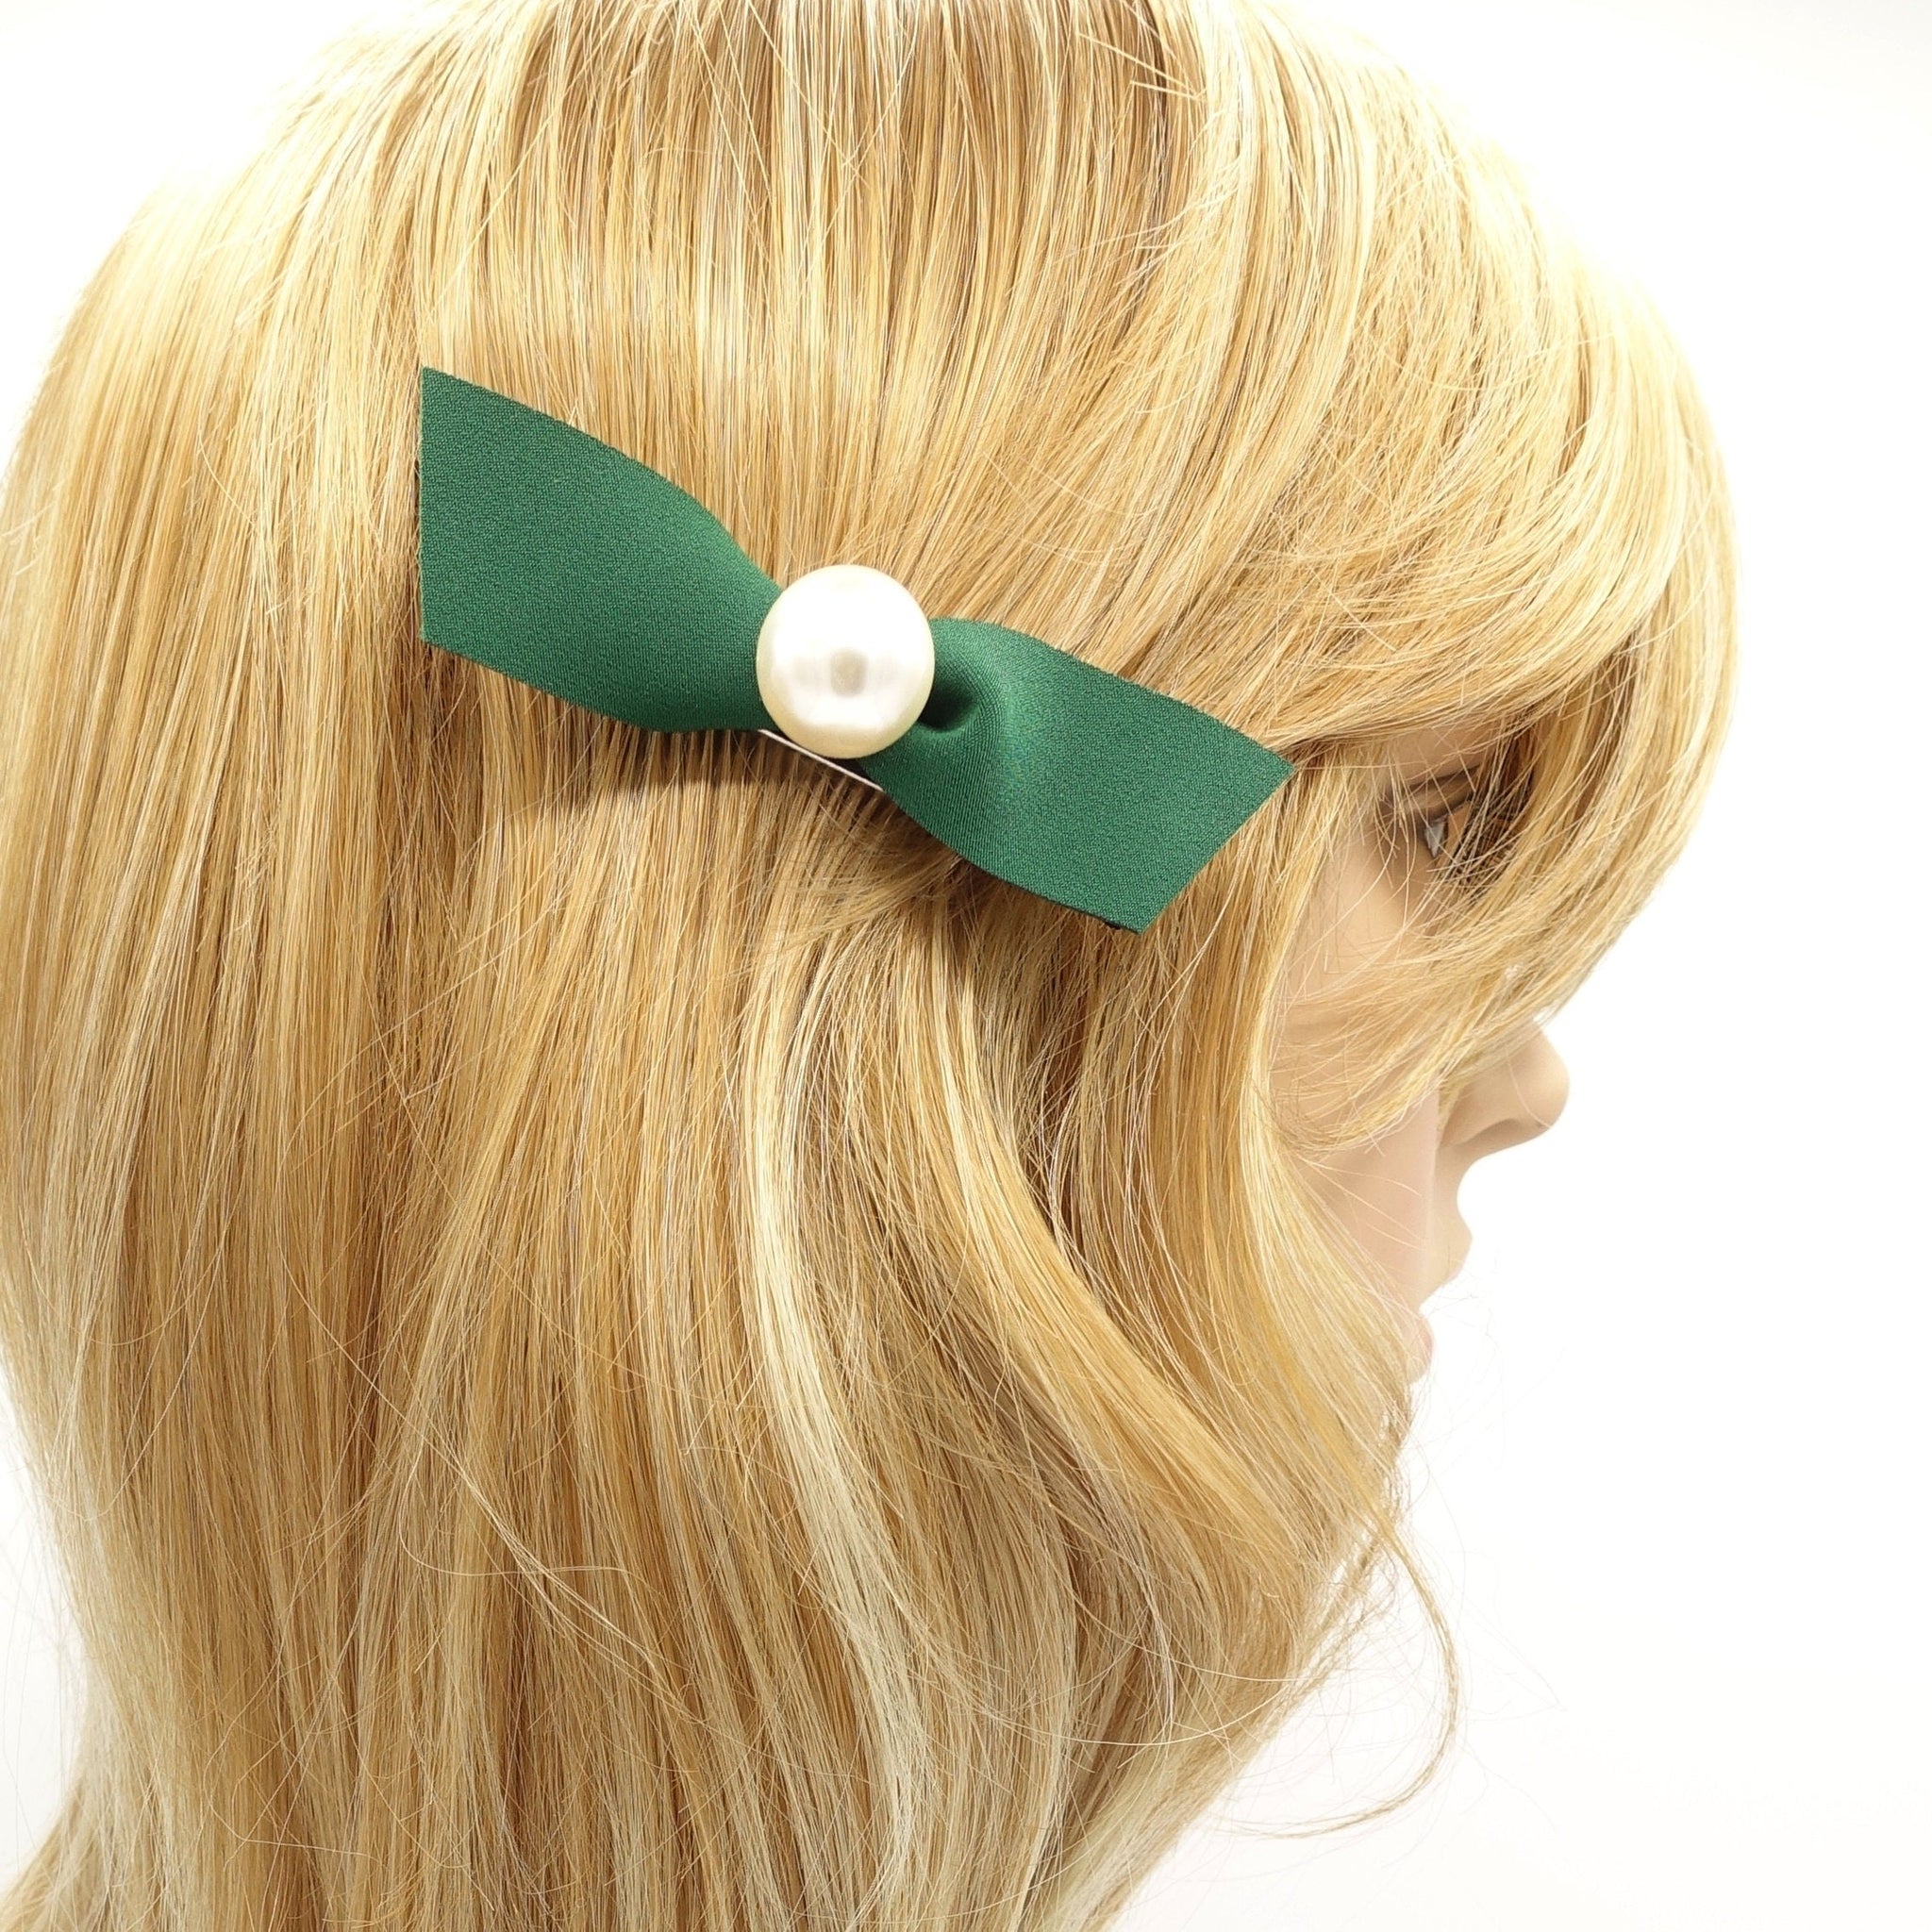 veryshine.com Barrette (Bow) Green pearl hair bow clip